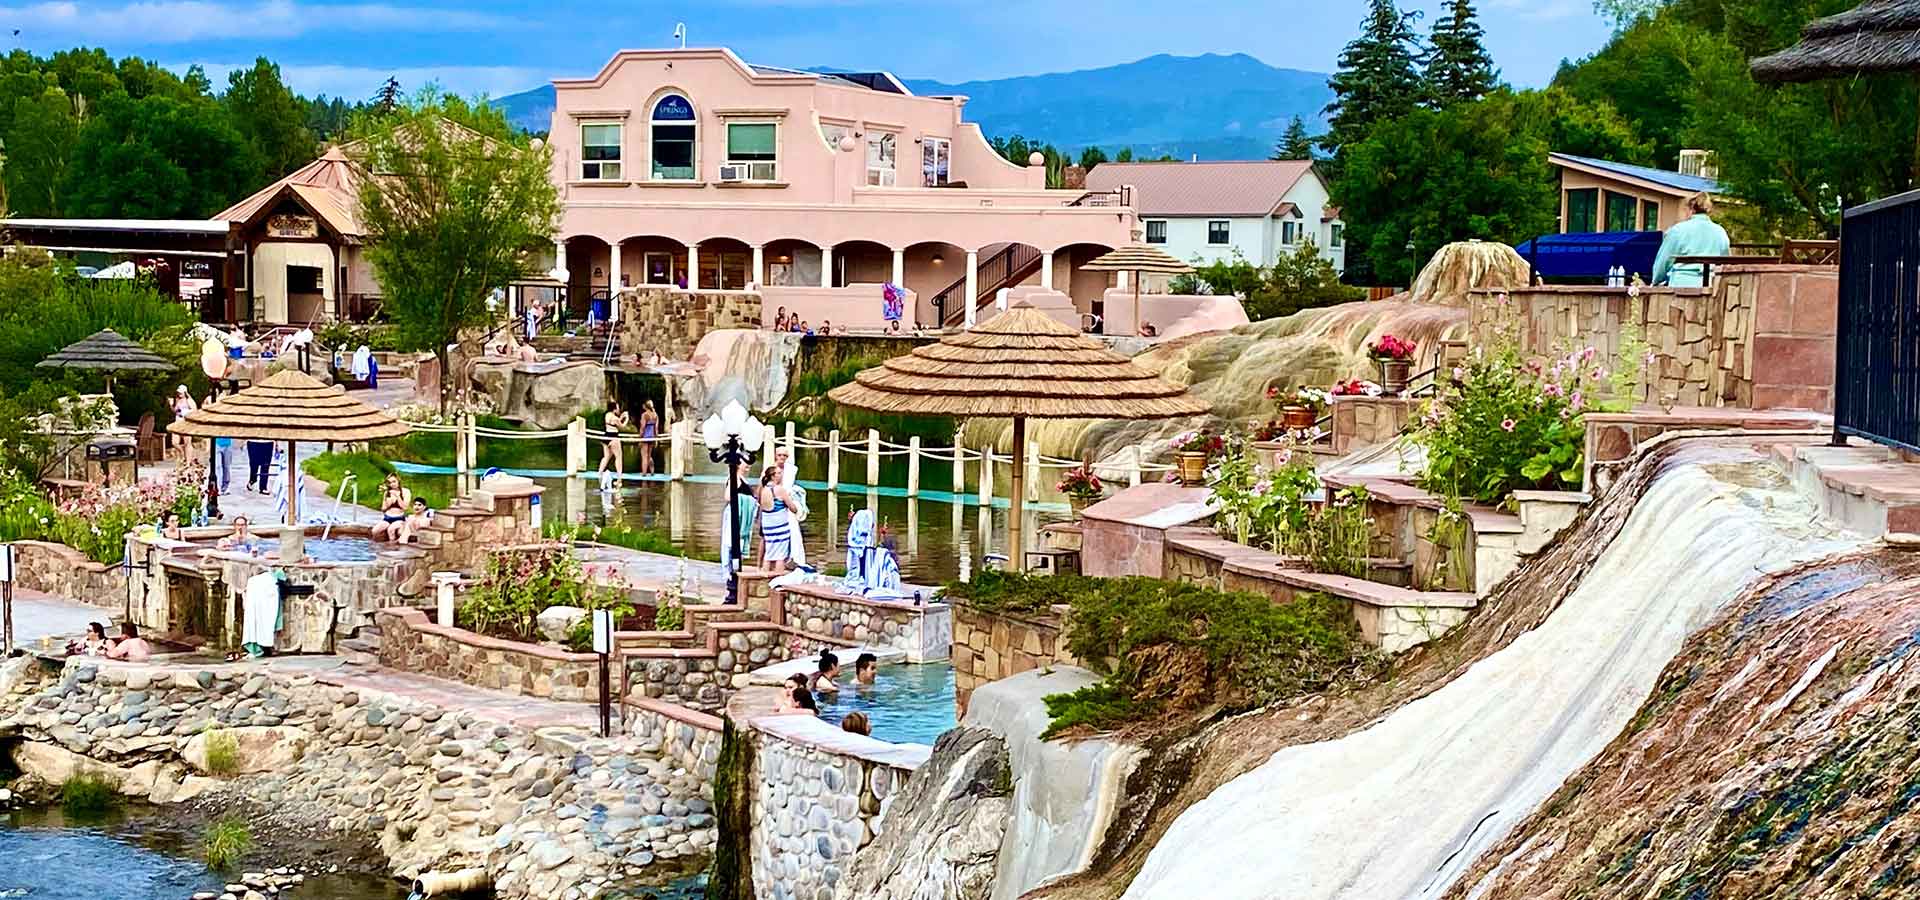 Hot Springs at Pagosa Springs CO